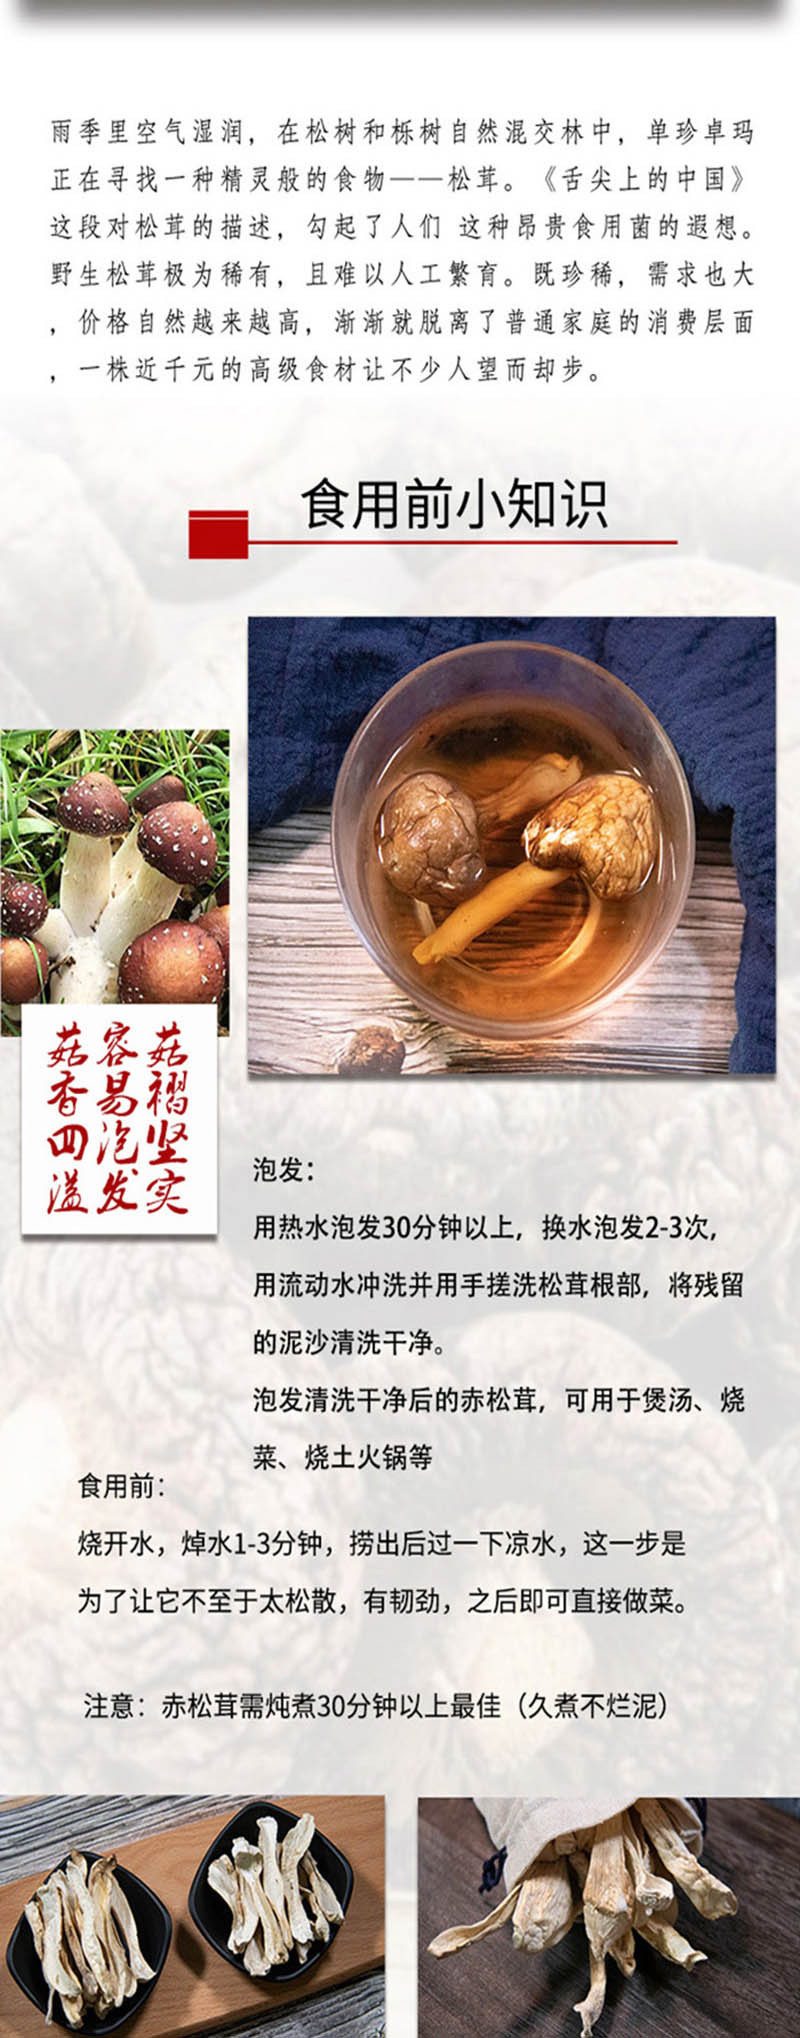  手绘小镇 洛阳农品 赤松茸250g嵩县农家特产原生态有机菌菇山珍干货